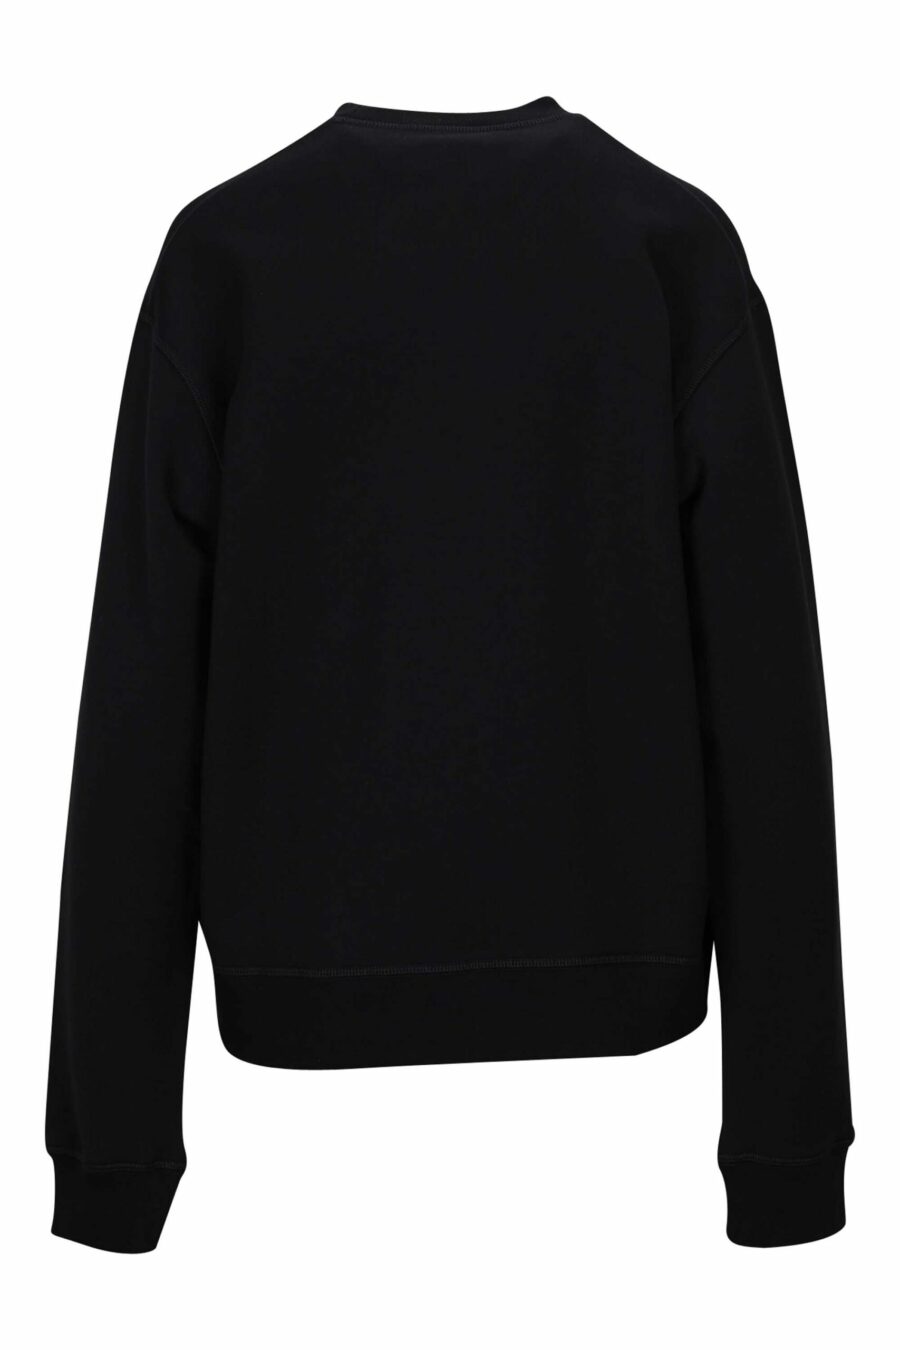 Schwarzes Sweatshirt mit "icon darling" Maxilogo - 8054148401900 1 skaliert